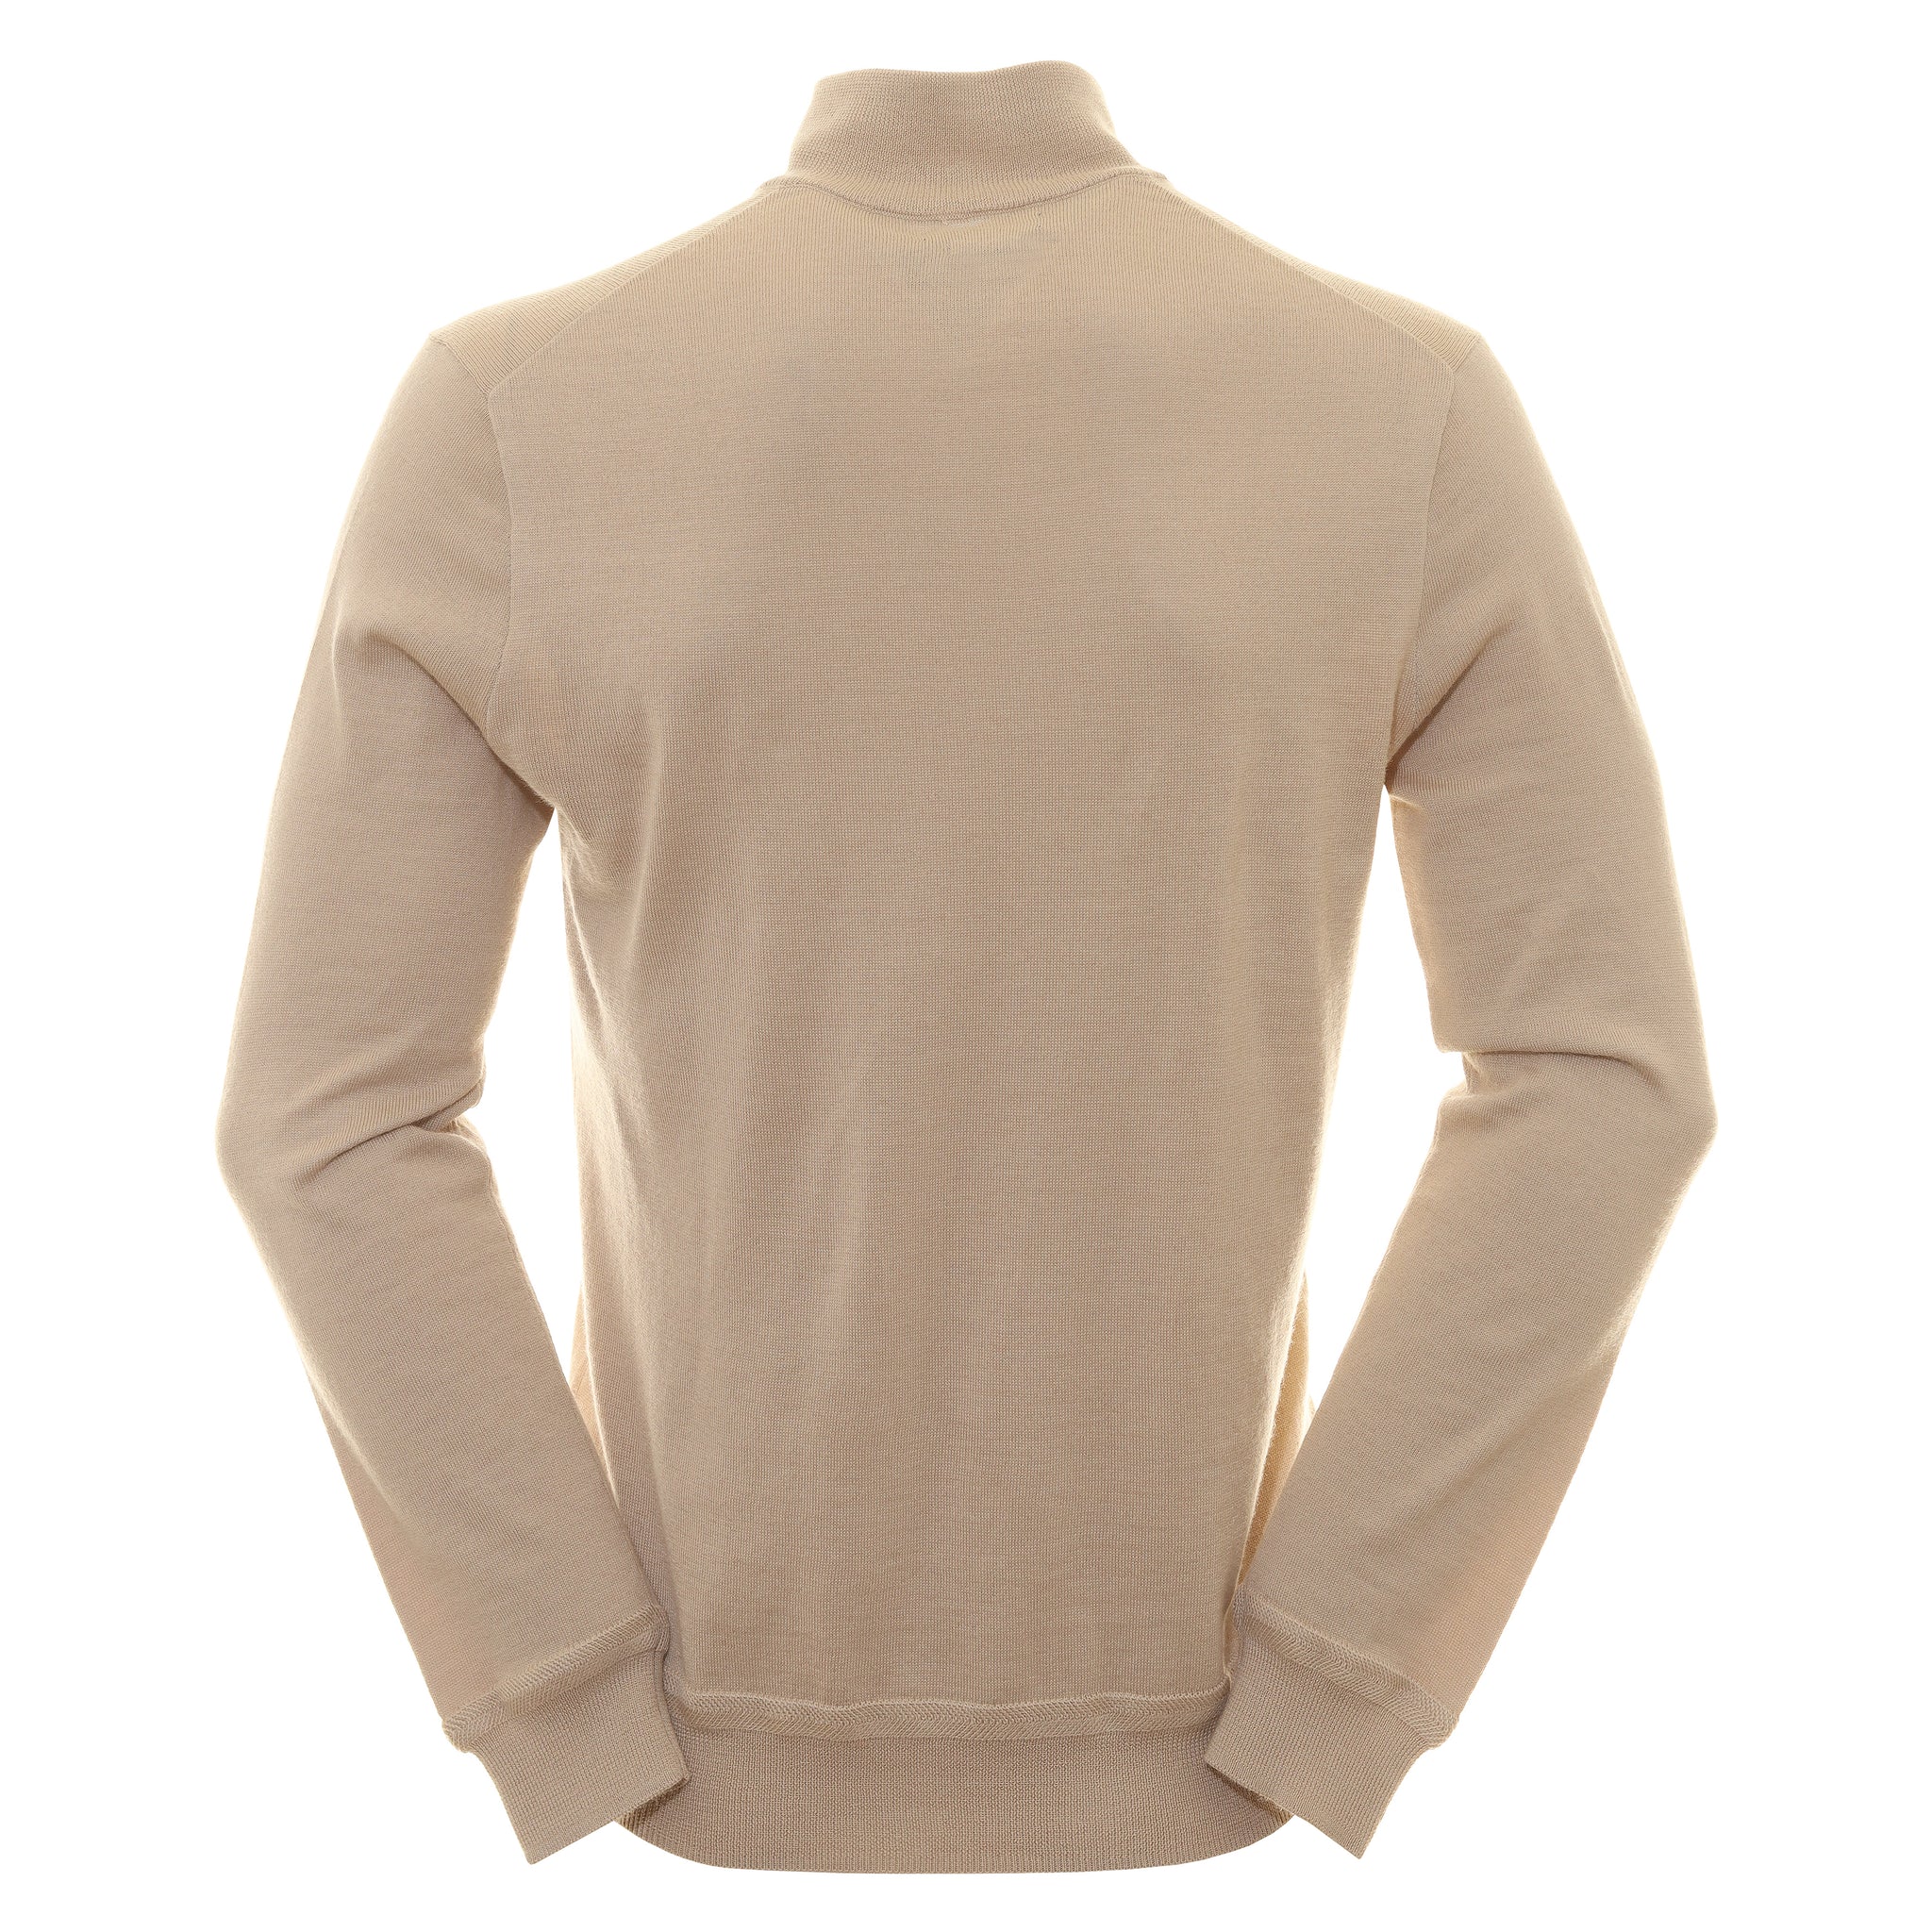 Zip Men's Sweatshirt Beige 710880522 - Mens Polo Shirts Barbour